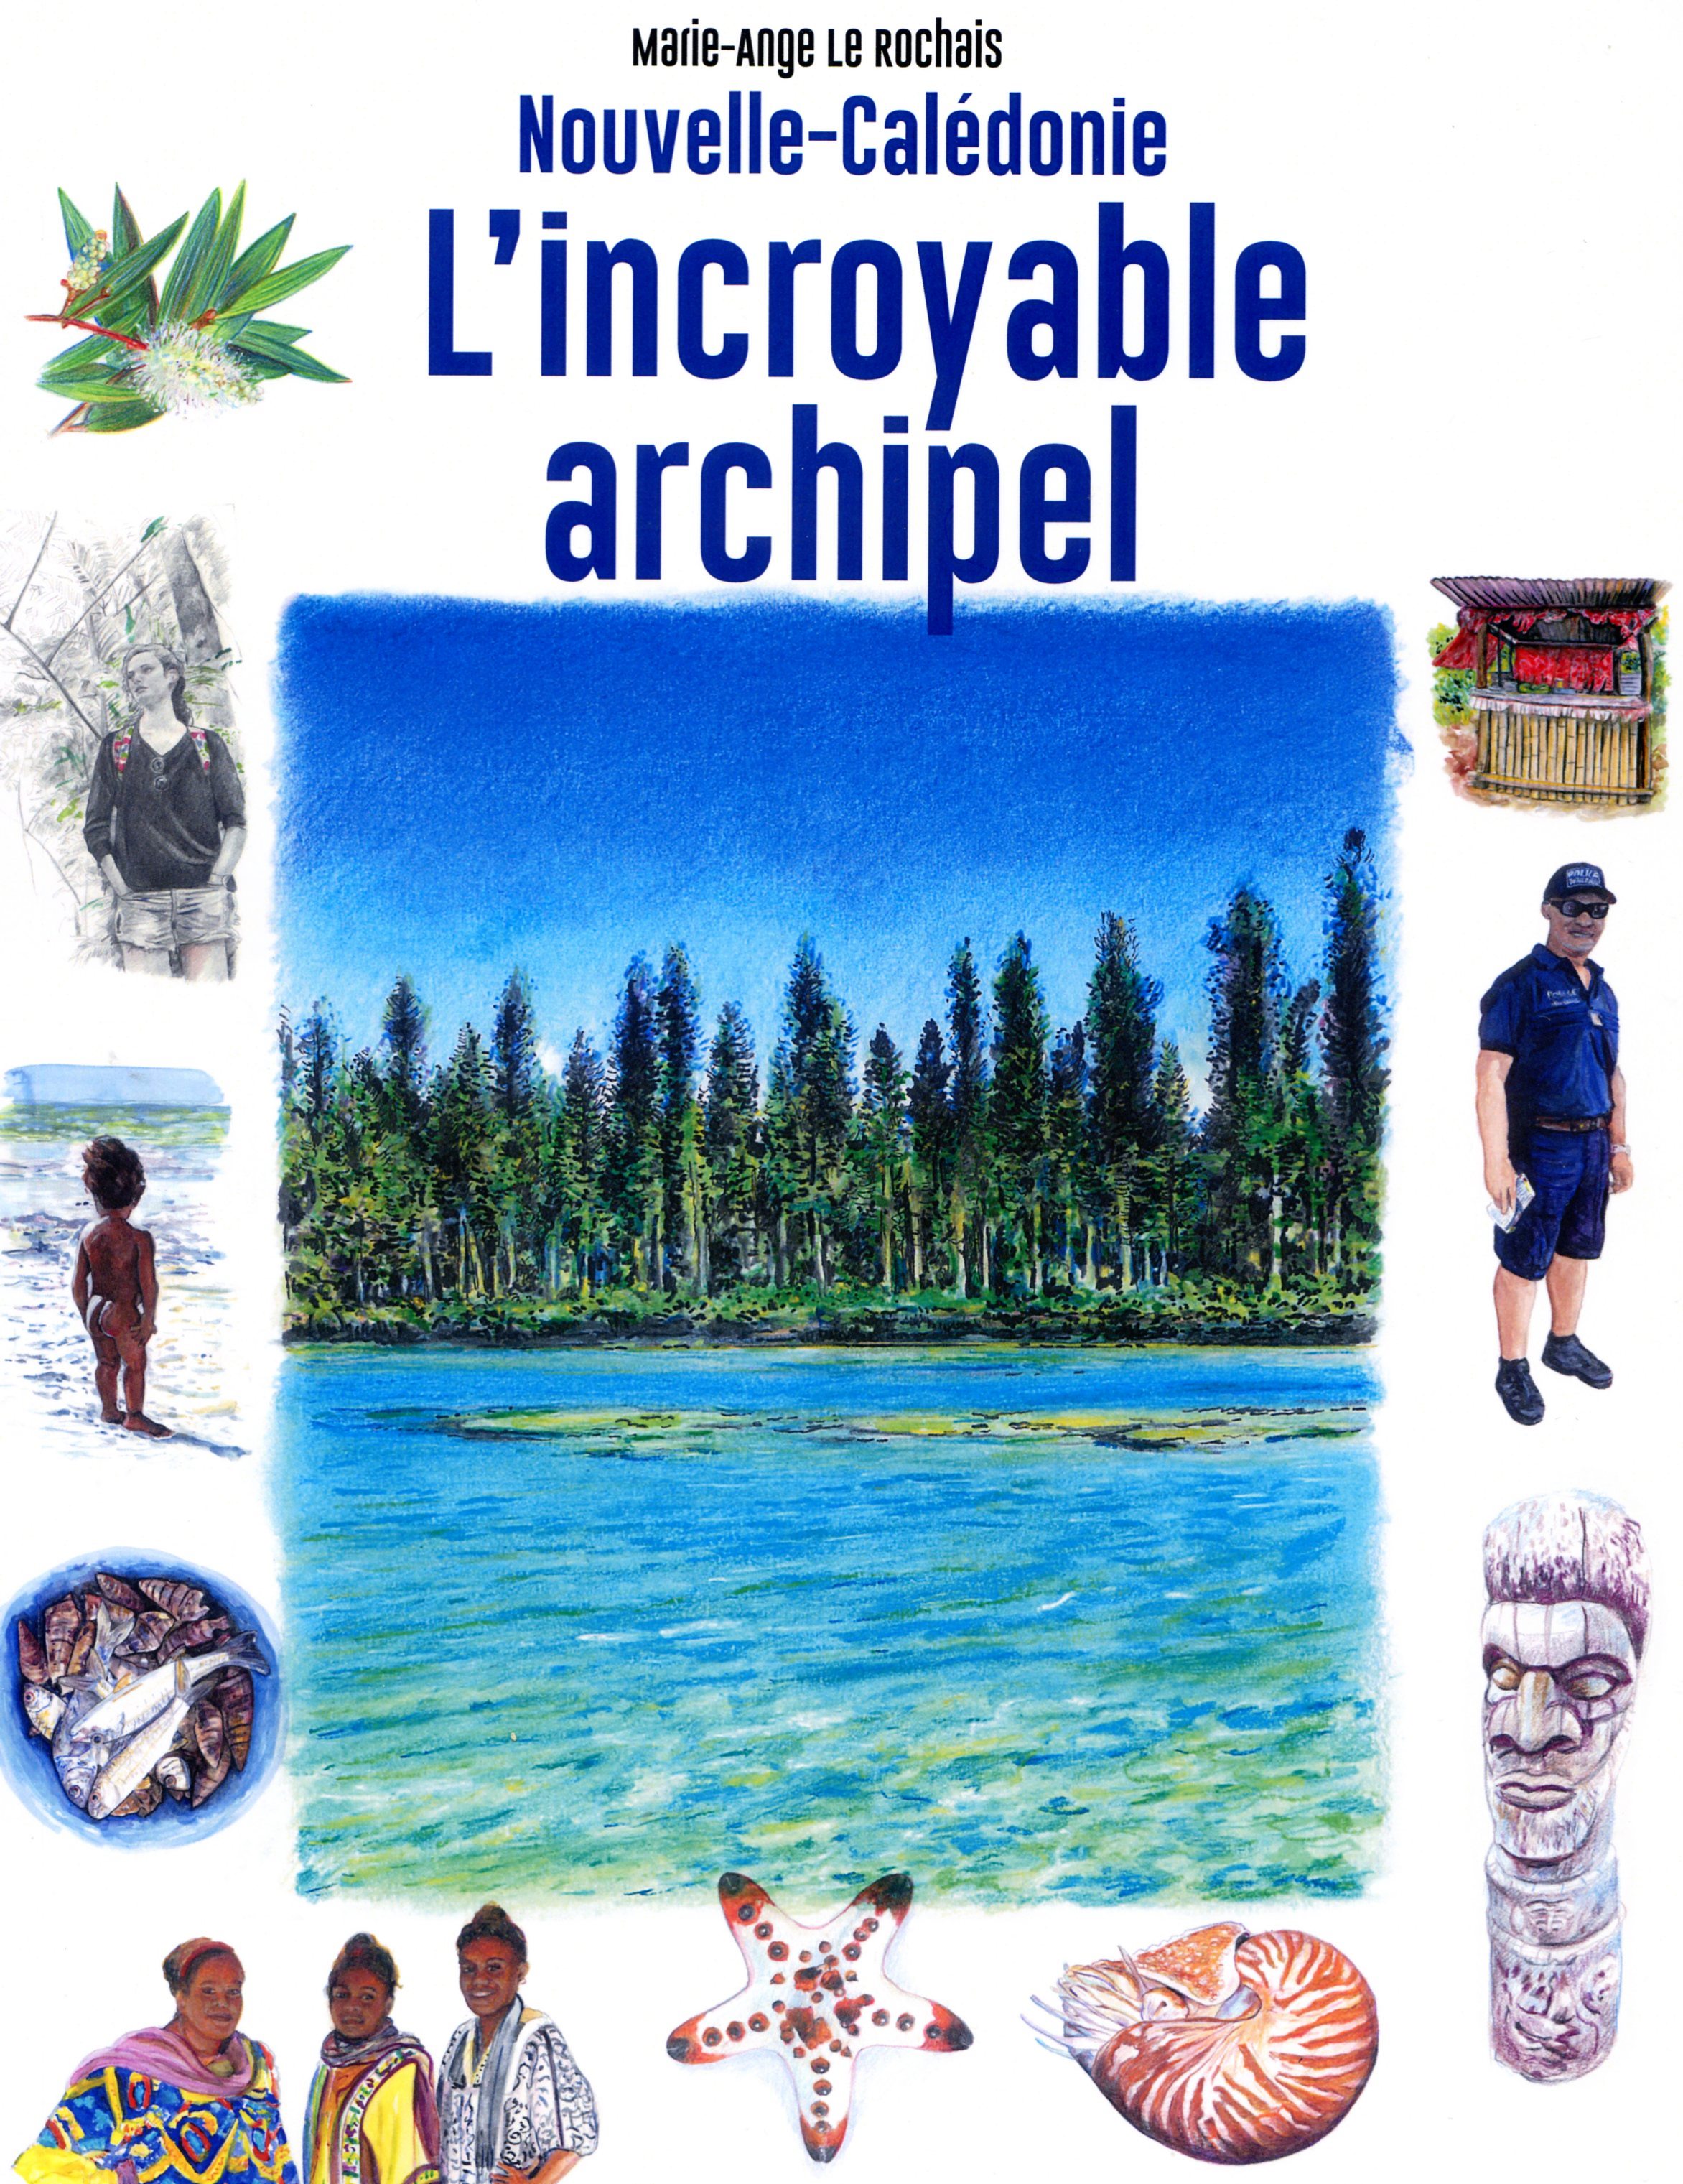 Nouvelle-Calédonie l'incroyable archipel de Marie-Ange Le Rochais